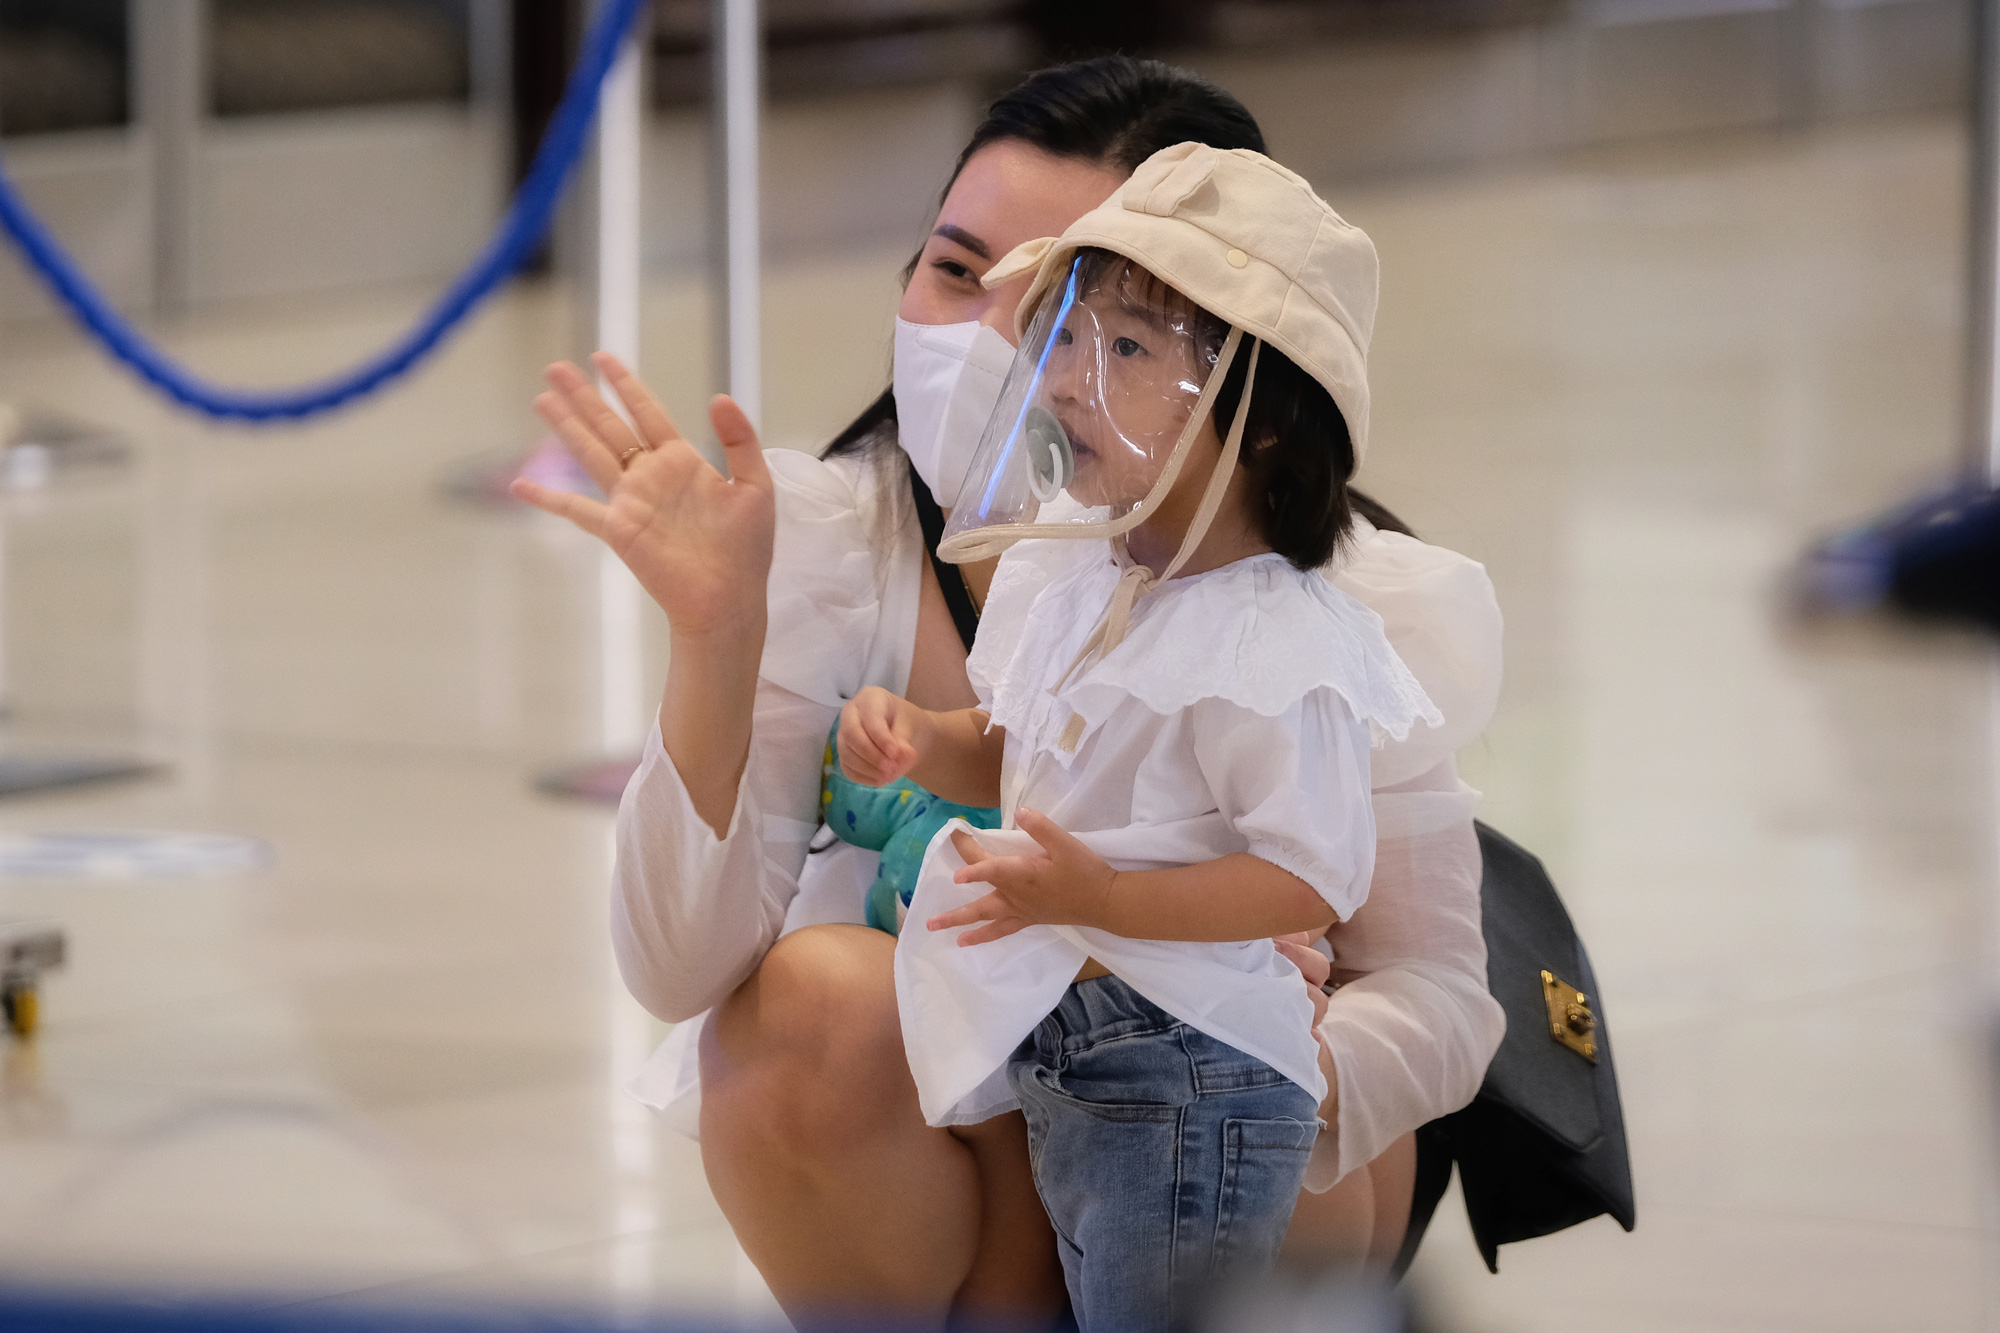 Sân bay Nội Bài đông đúc trước ngày nghỉ lễ, người người nhà nhà đi lu lịch sau tròn 1 năm làn sóng dịch lần thứ 4 - Ảnh 7.